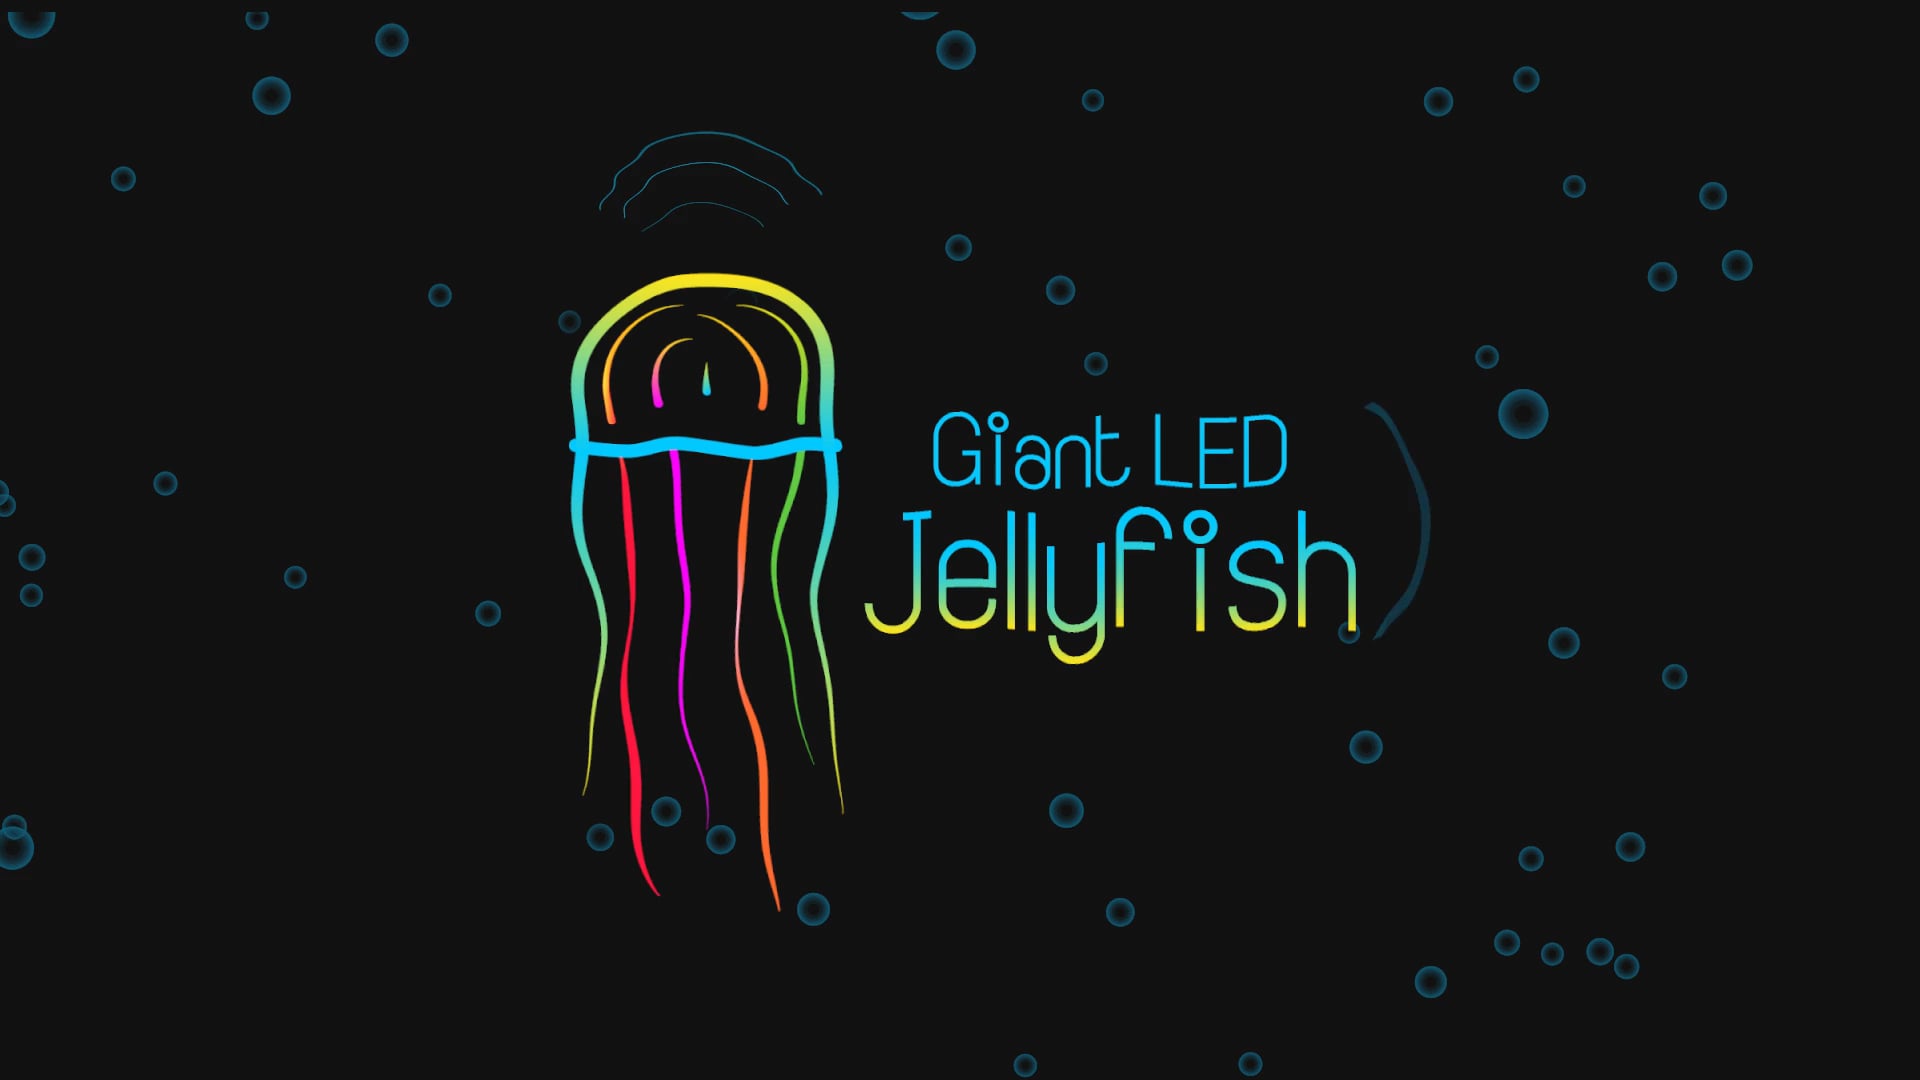 Giant LED Jellyfish